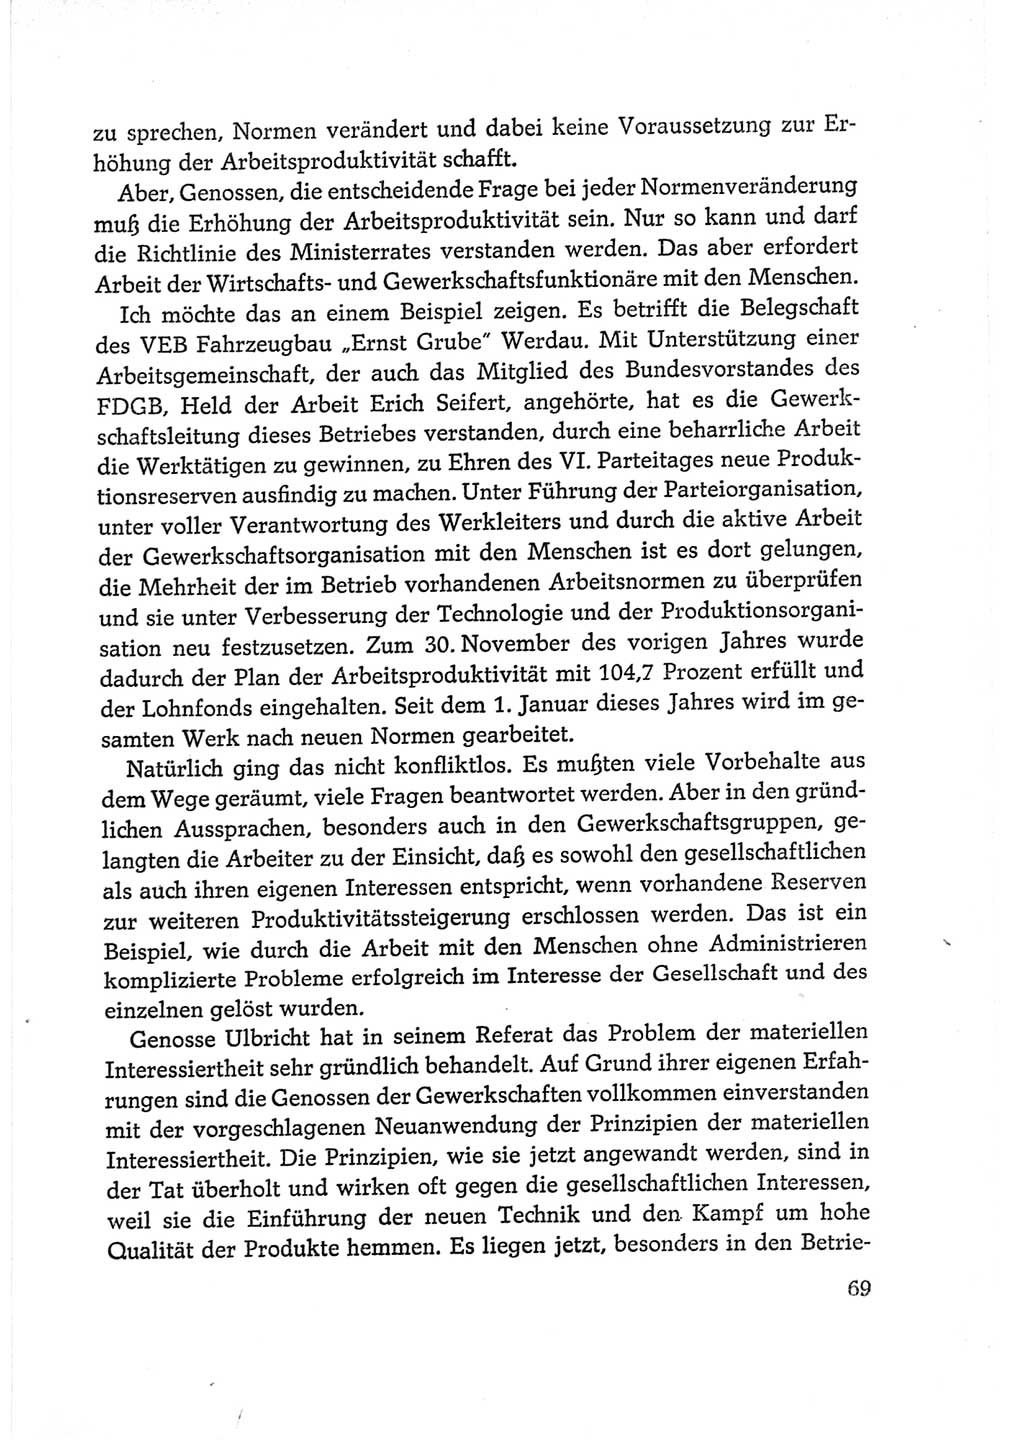 Protokoll der Verhandlungen des Ⅵ. Parteitages der Sozialistischen Einheitspartei Deutschlands (SED) [Deutsche Demokratische Republik (DDR)] 1963, Band Ⅱ, Seite 69 (Prot. Verh. Ⅵ. PT SED DDR 1963, Bd. Ⅱ, S. 69)